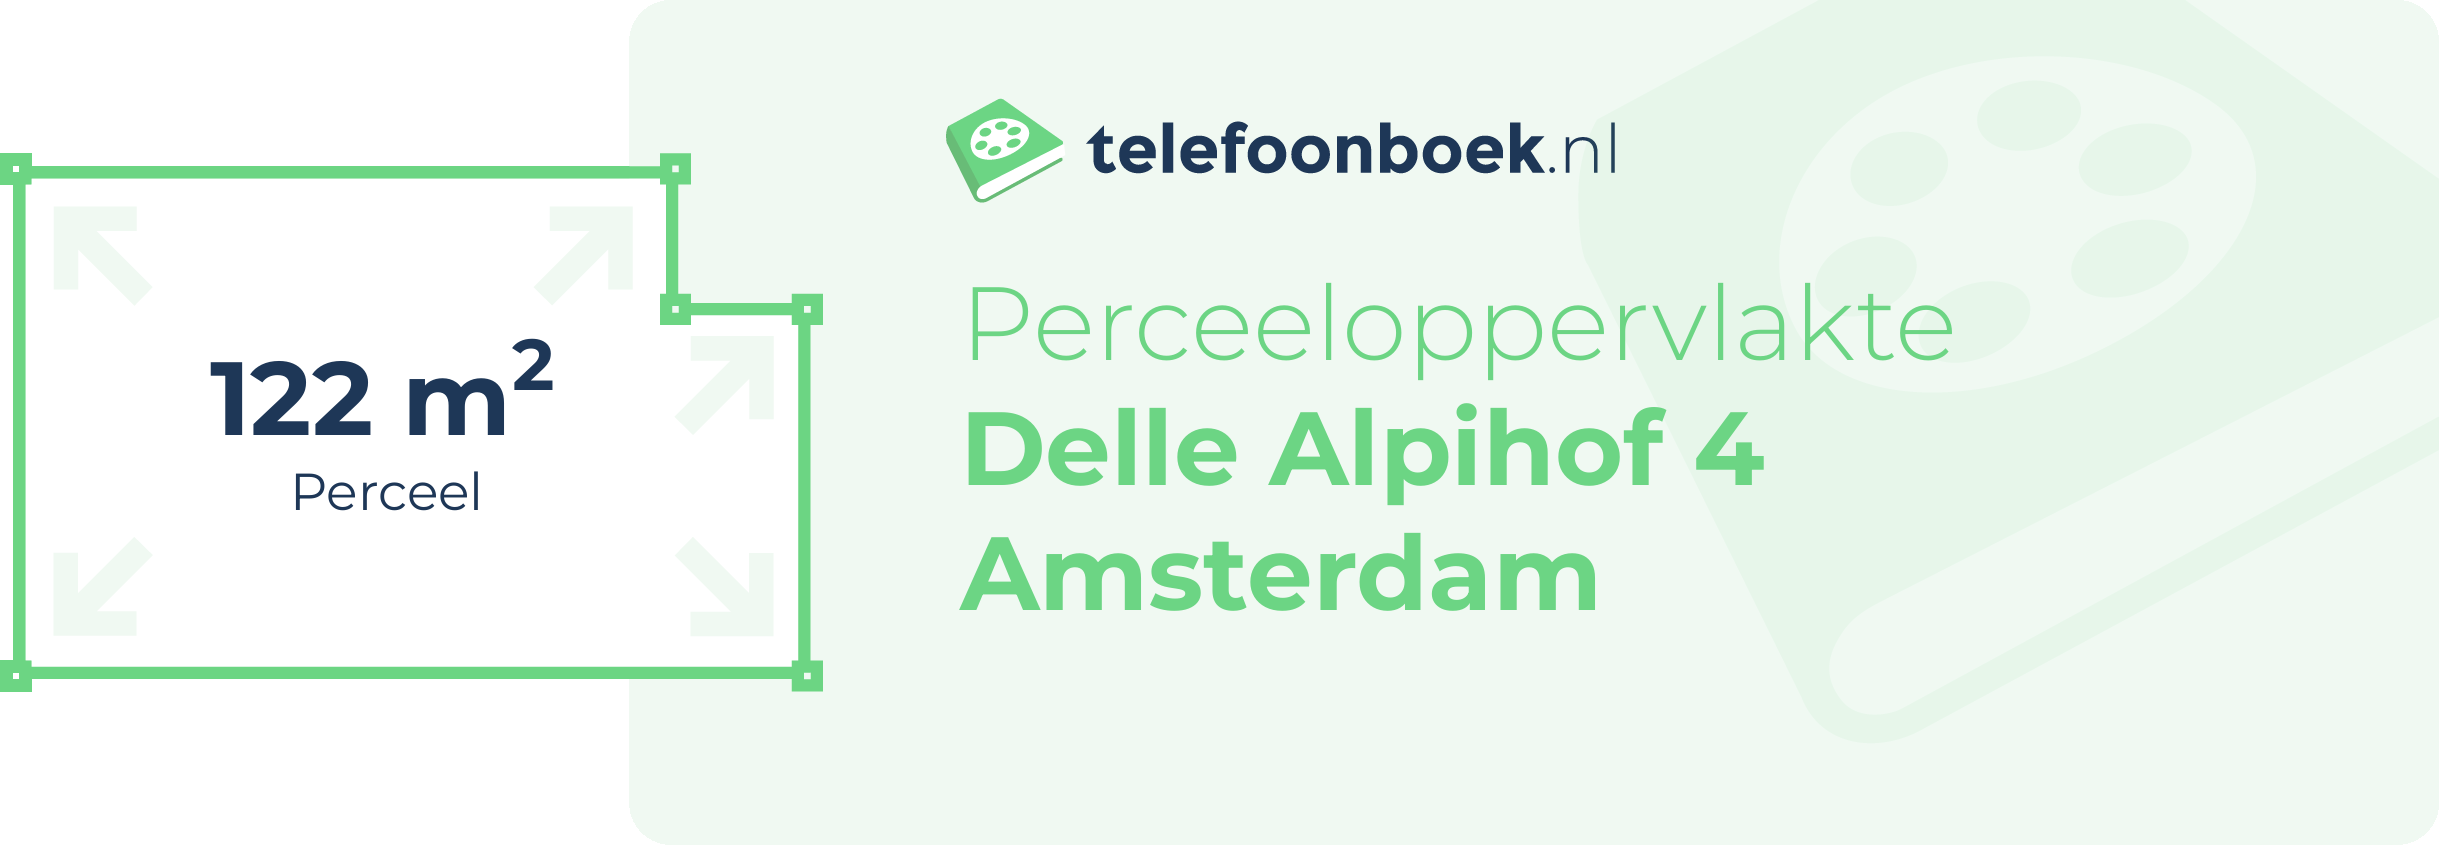 Perceeloppervlakte Delle Alpihof 4 Amsterdam